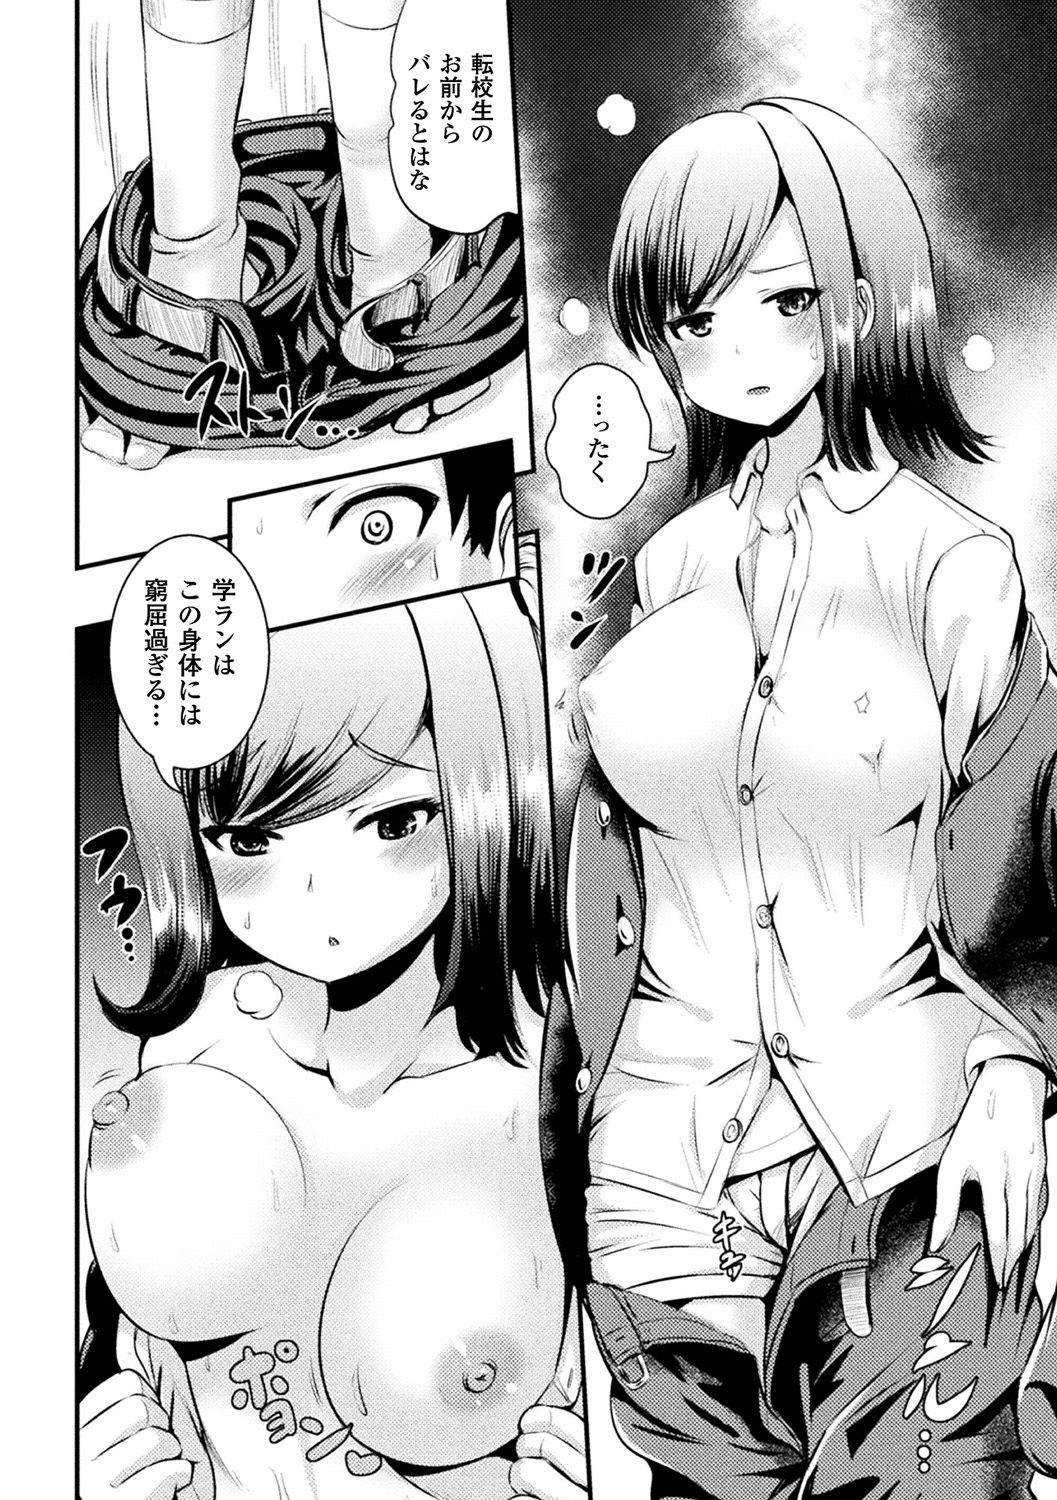 Friend [Anthology] Bessatsu Comic Unreal TS Bitch ~Yaritagari Nyotaika Bishoujo-tachi~ Vol. 2 [Digital] Hardcoresex - Page 10